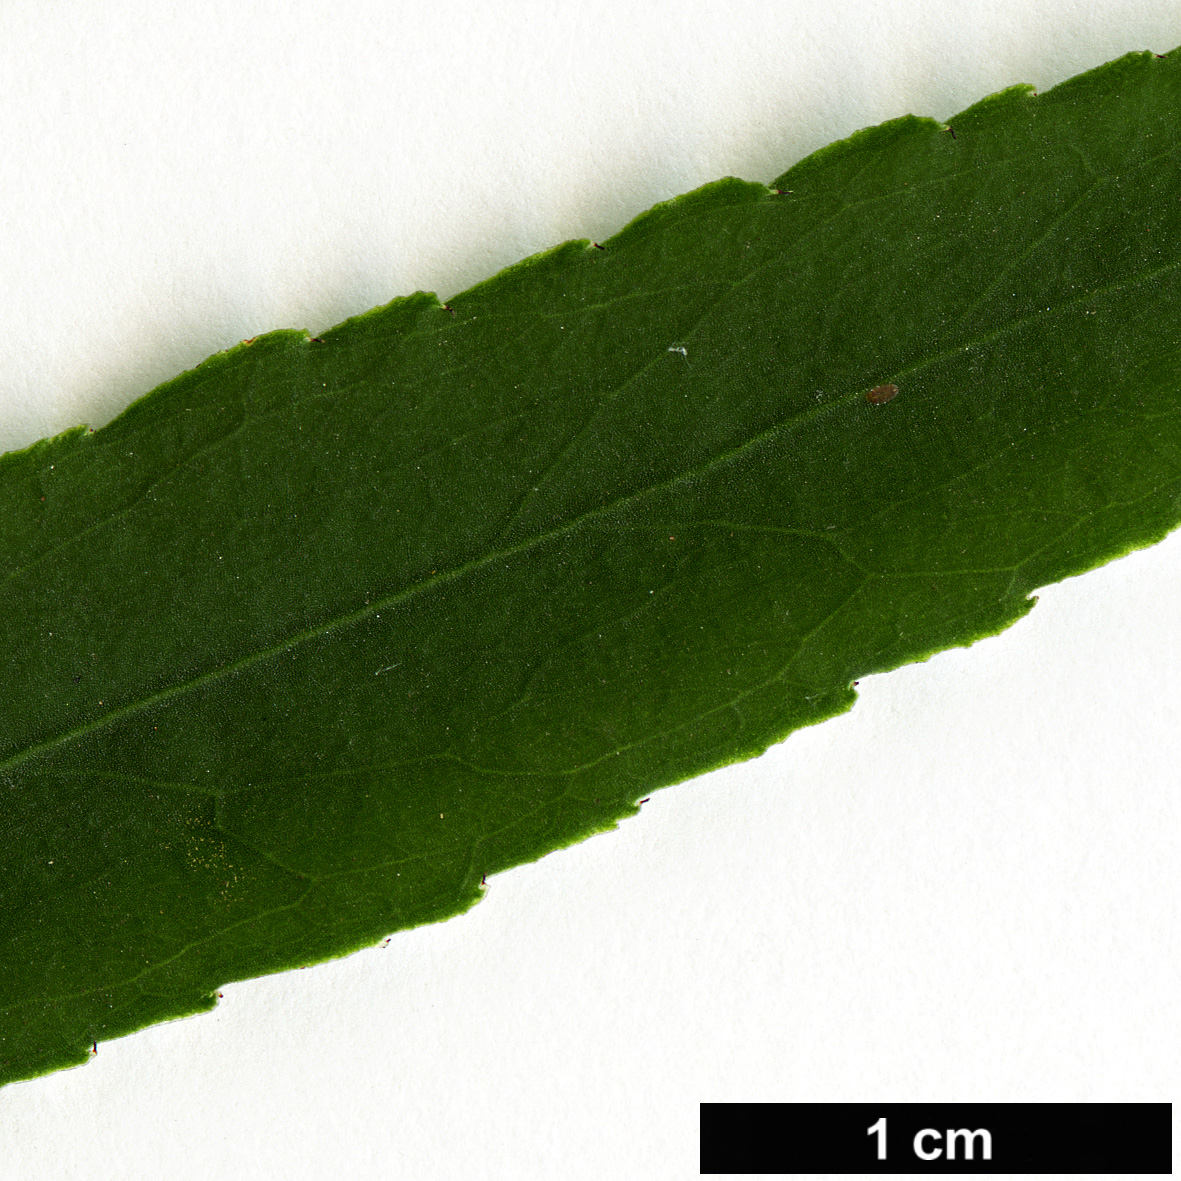 High resolution image: Family: Celastraceae - Genus: Euonymus - Taxon: cornutus - SpeciesSub: var. quinquecornutus